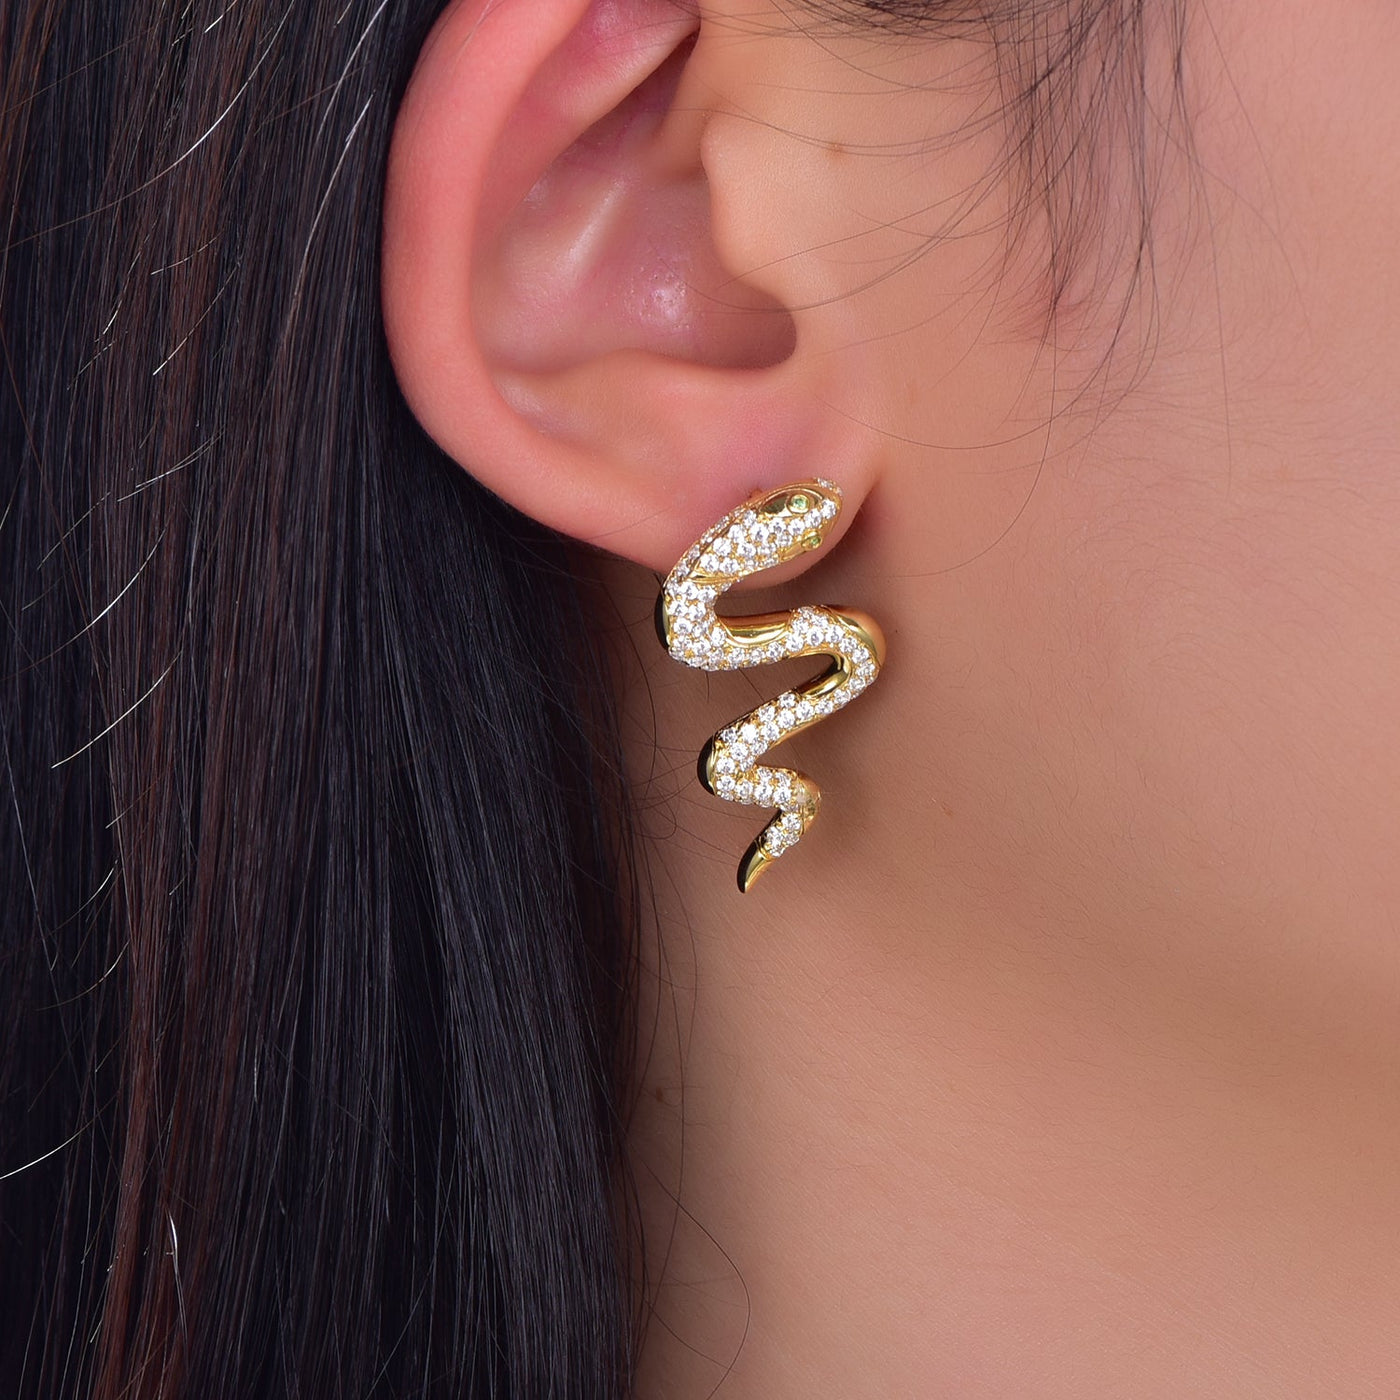 925 silver earrings with 14K gold plating CZ KE33004 Kirin Jewelry